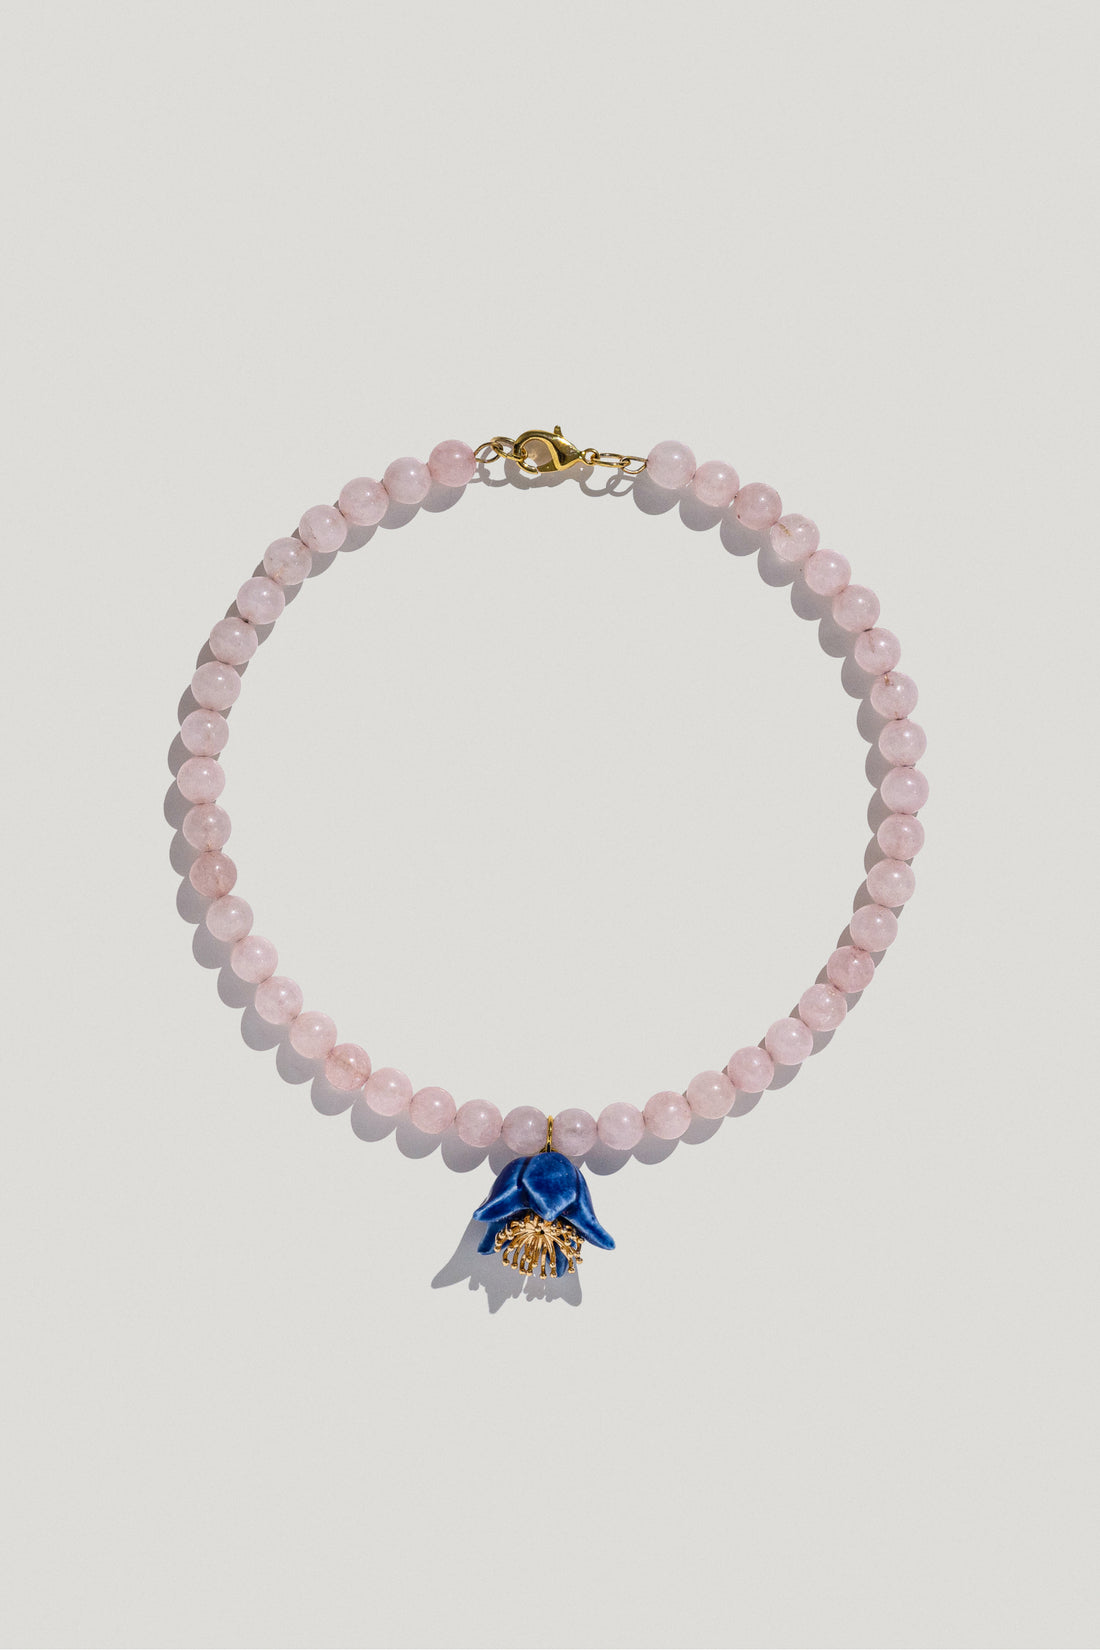 Polysk necklace with bubble-gum quartz and a blue flower